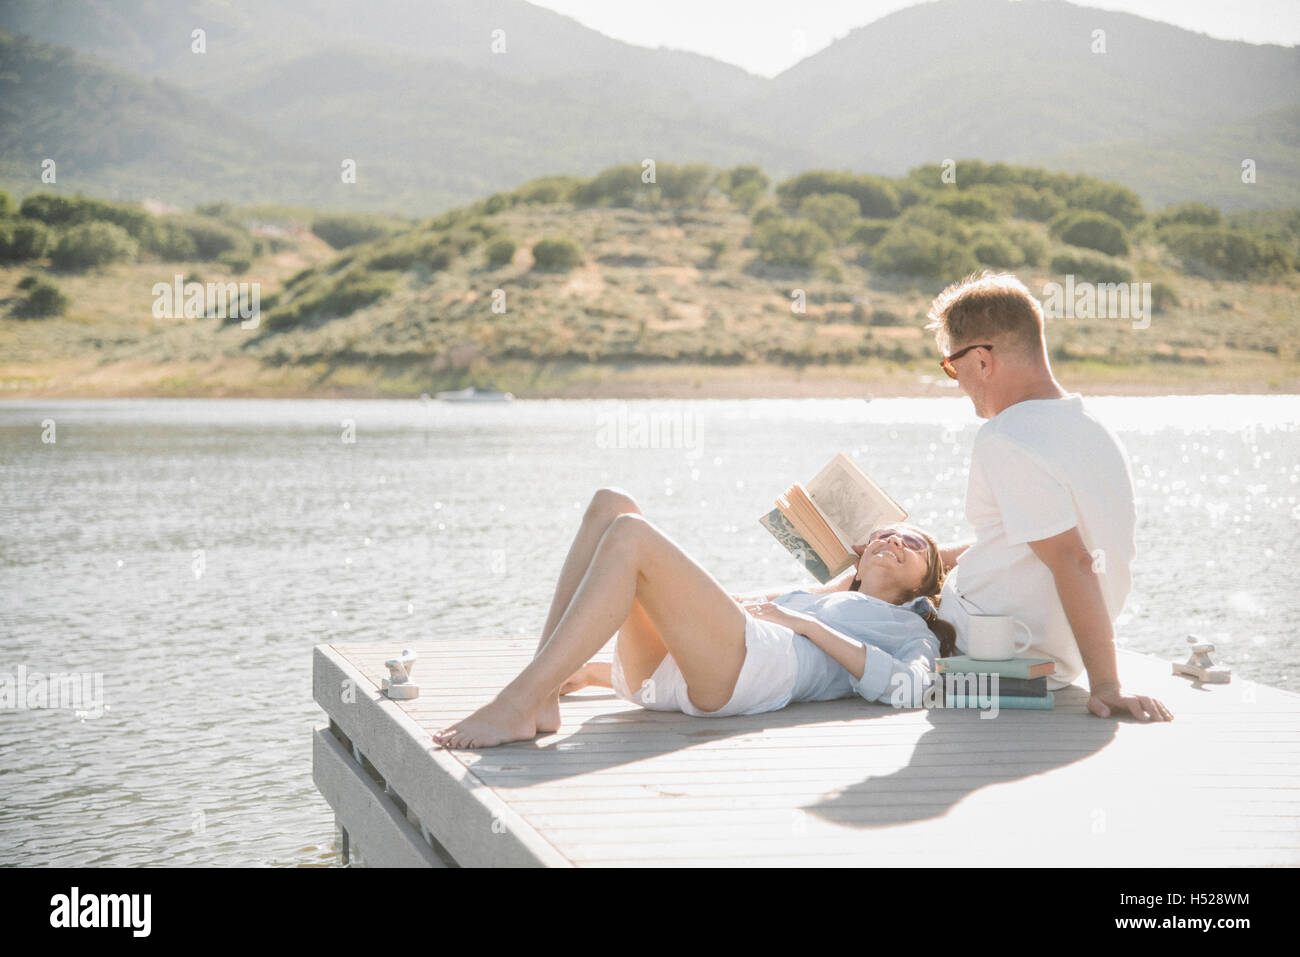 Hombre y mujer recostado sobre un embarcadero, leyendo un libro. Foto de stock